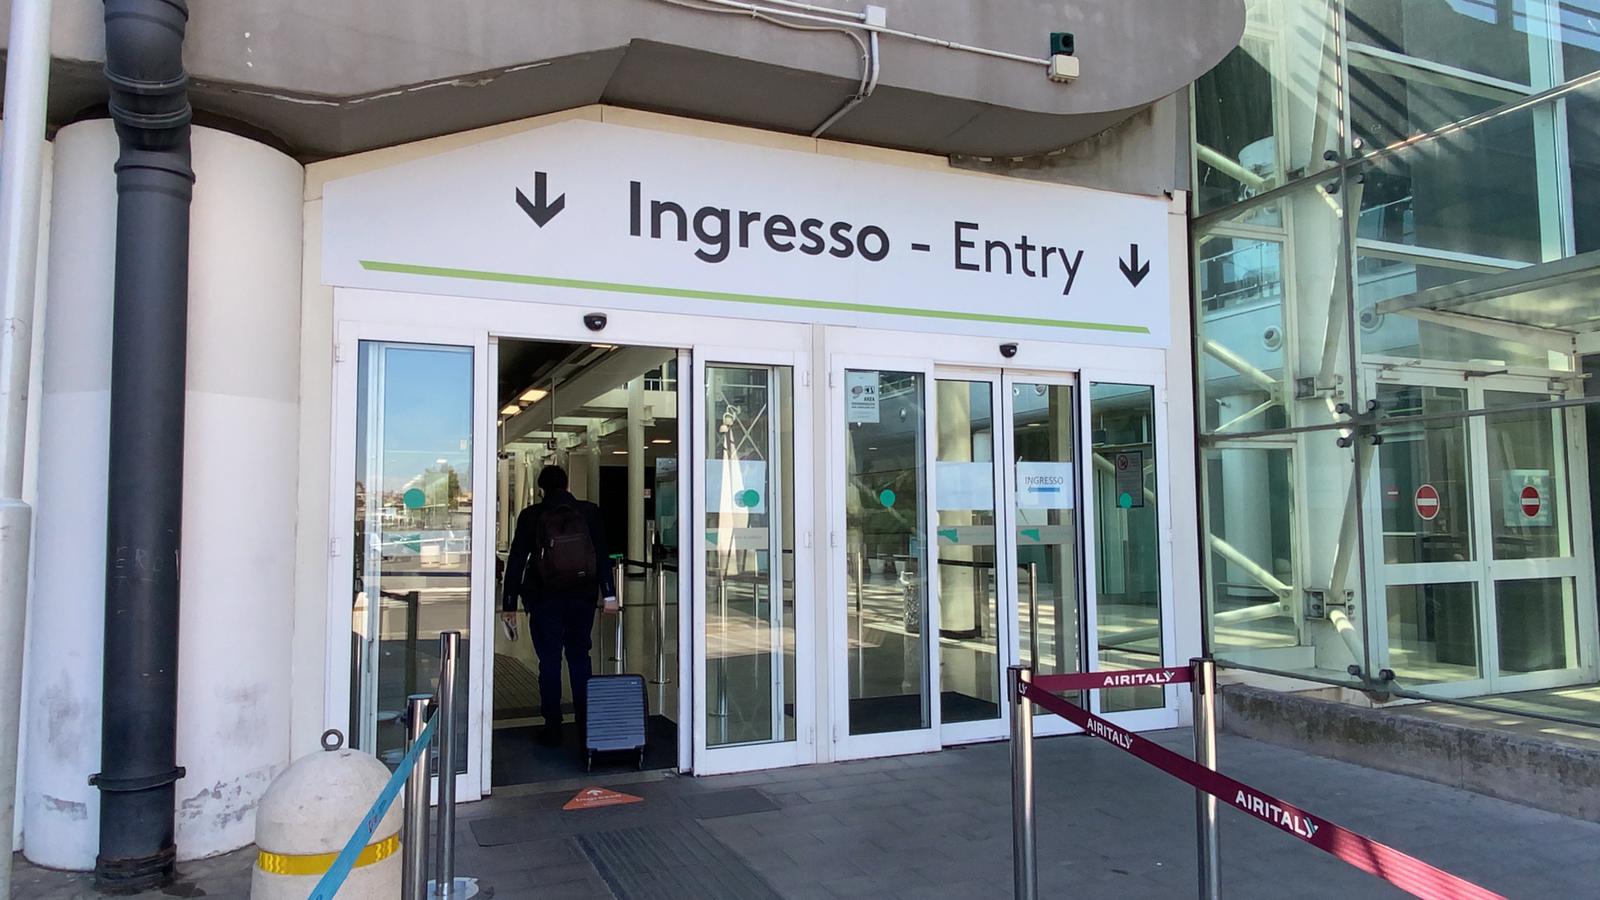 Aeroporto di Catania: accesso consentito solo ai passeggeri. Nuove misure per garantire la massima sicurezza